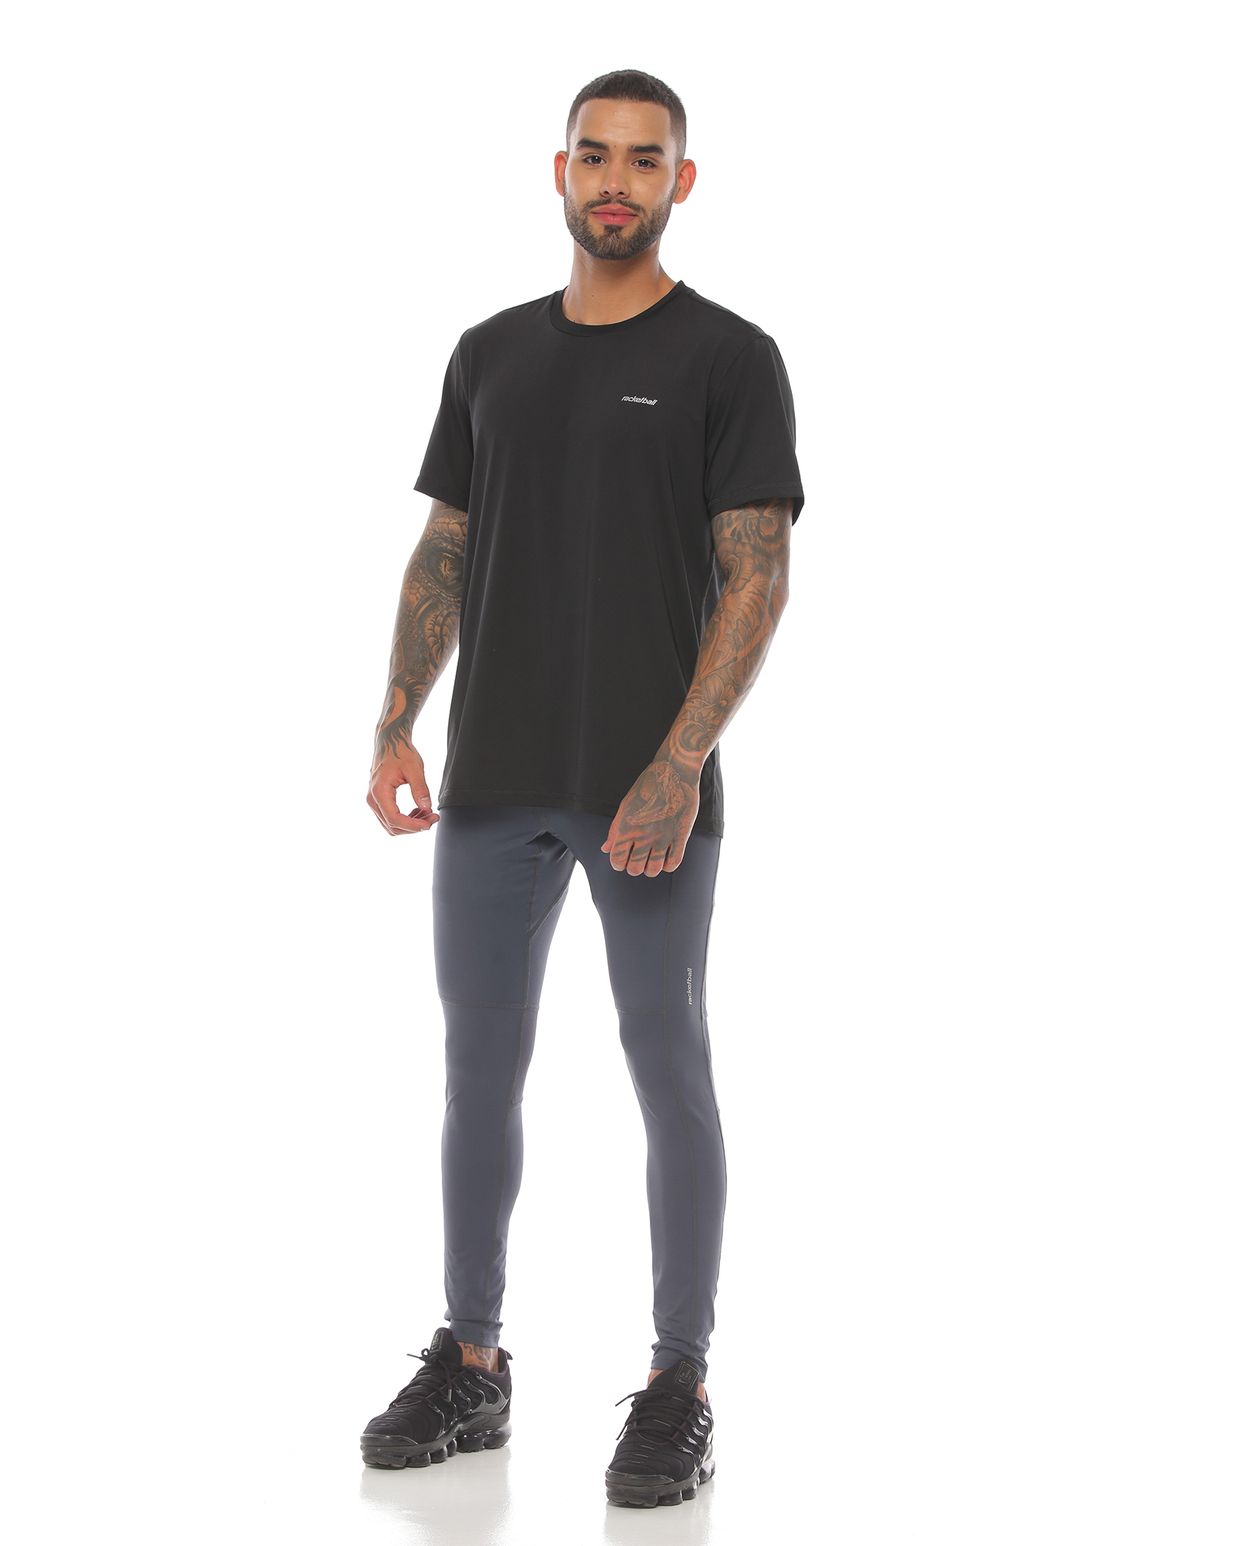 modelo con licra deportiva color gris oscuro y camiseta deportiva color negro para hombre cuerpo completo